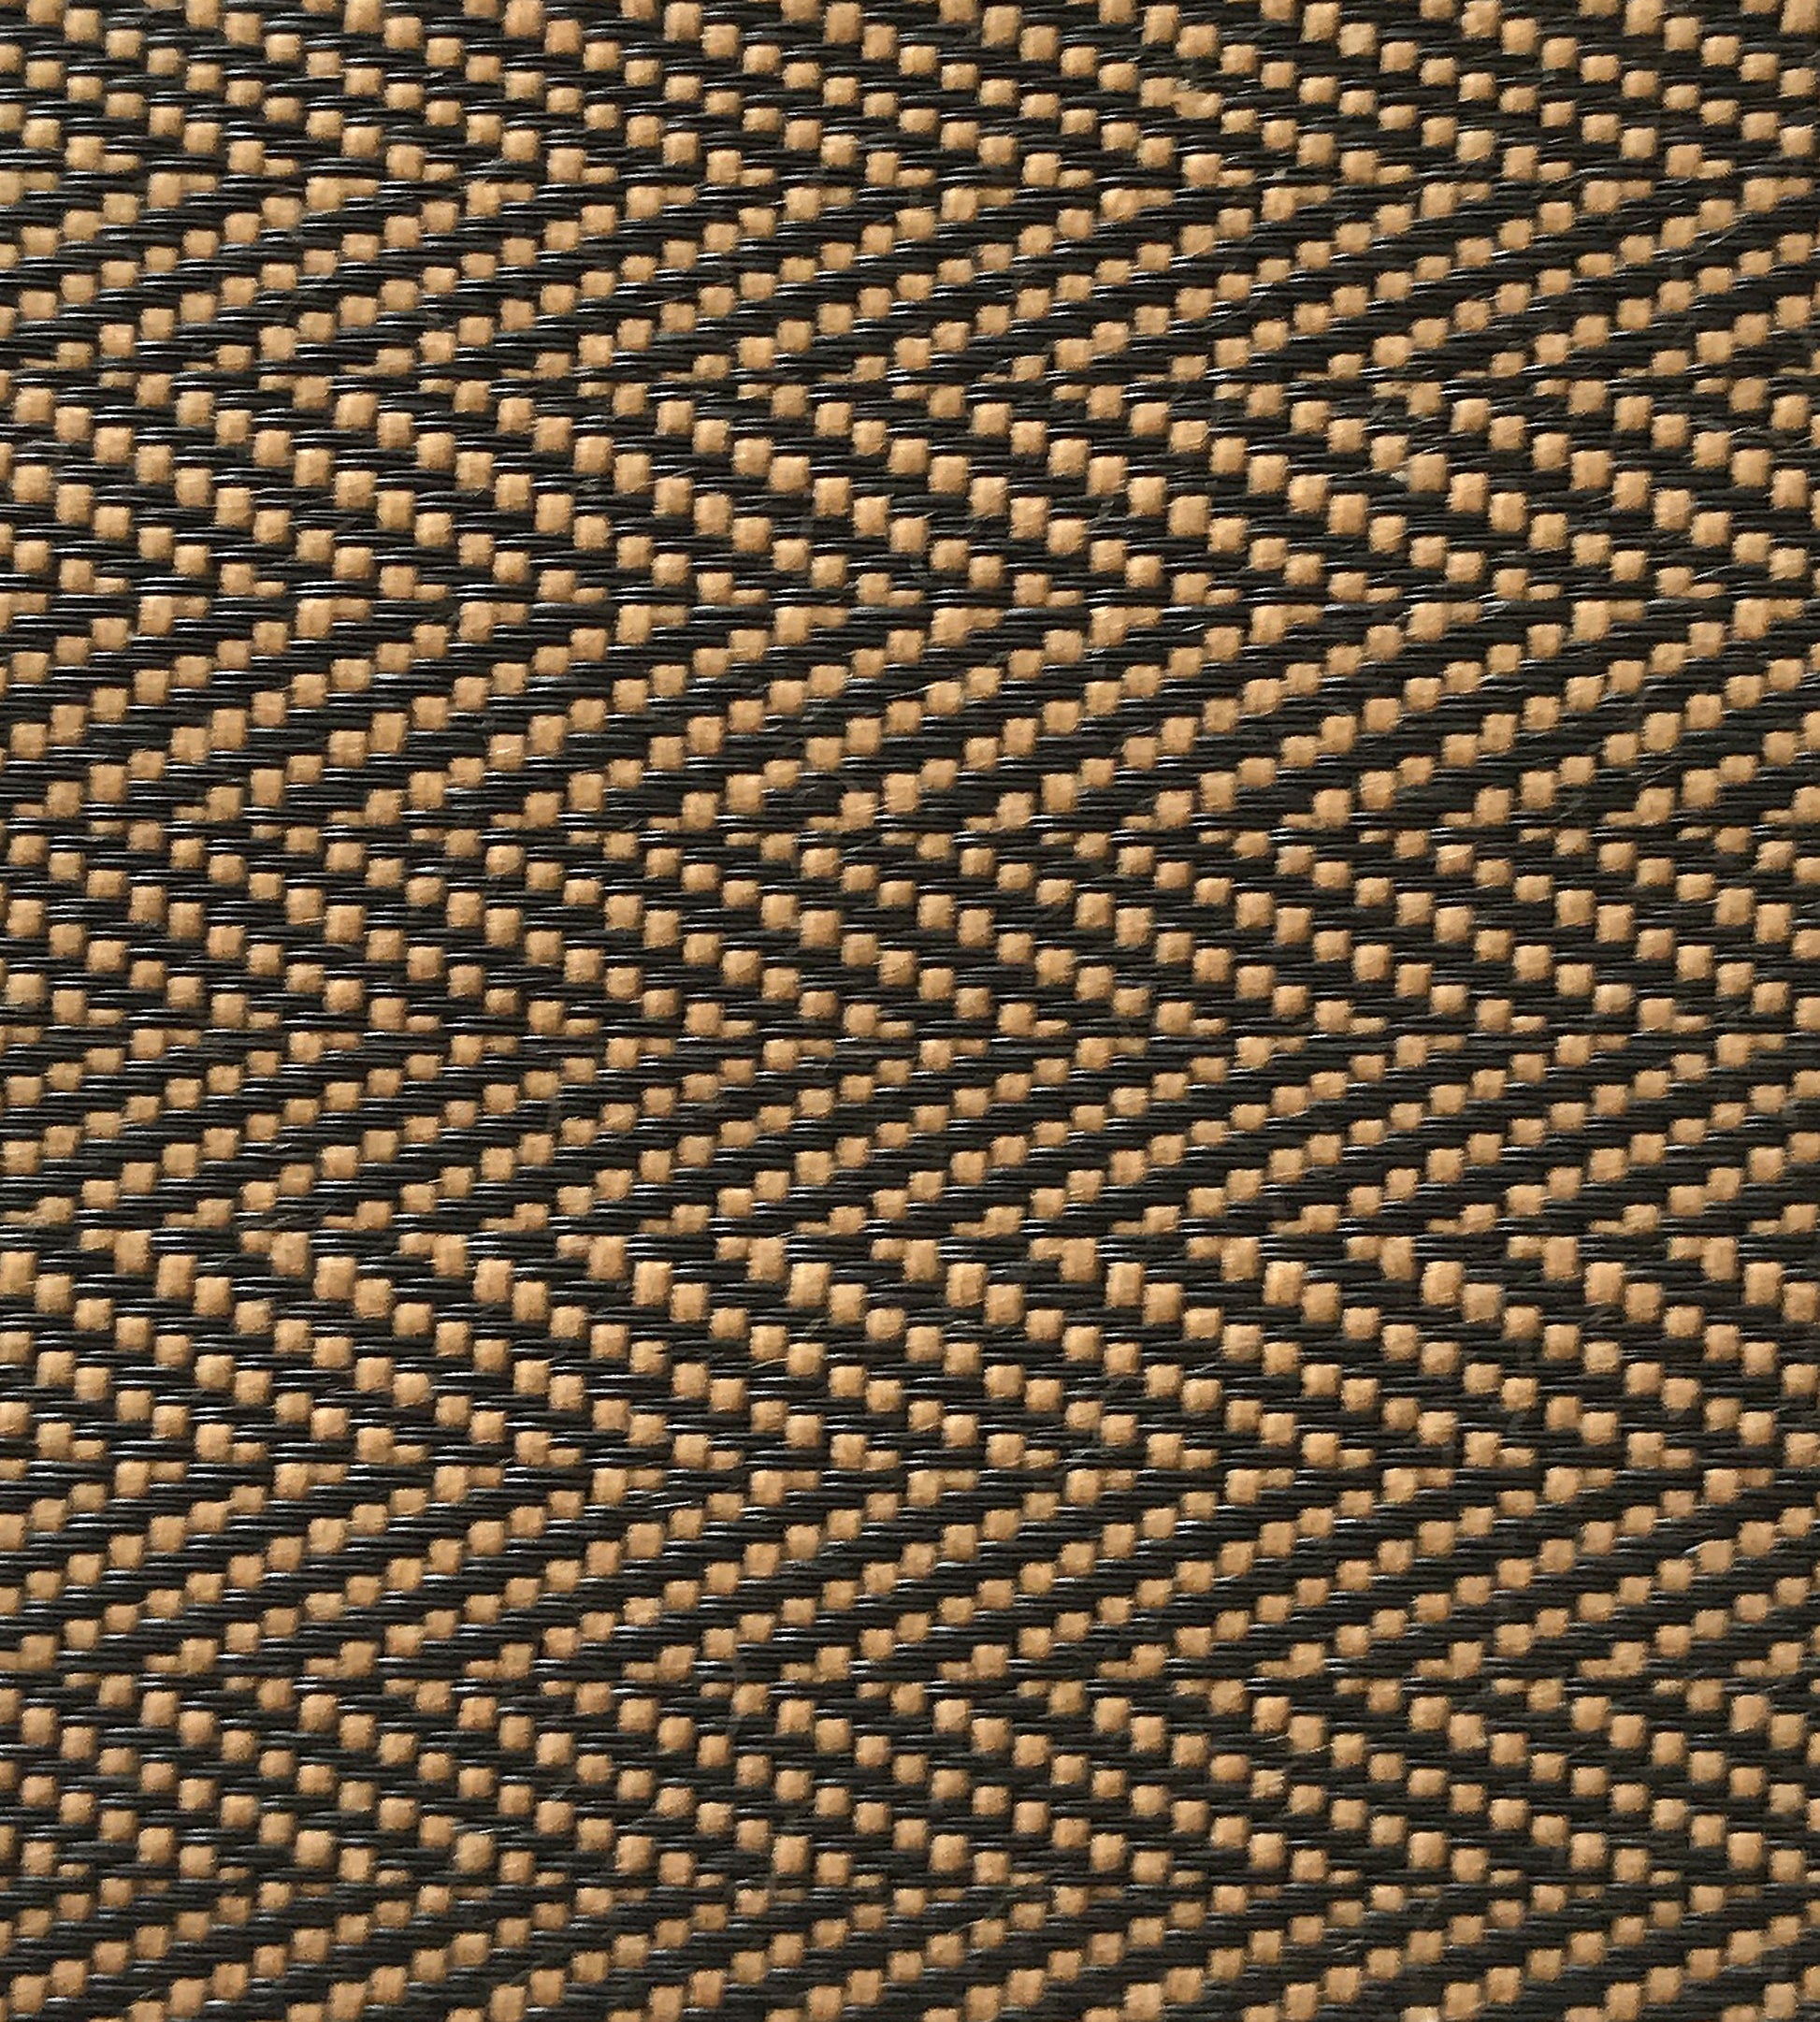 Purchase Old World Weavers Fabric Pattern number SK 0002MI65, Milzig Herringbone - Horsehair Brown / Black 1